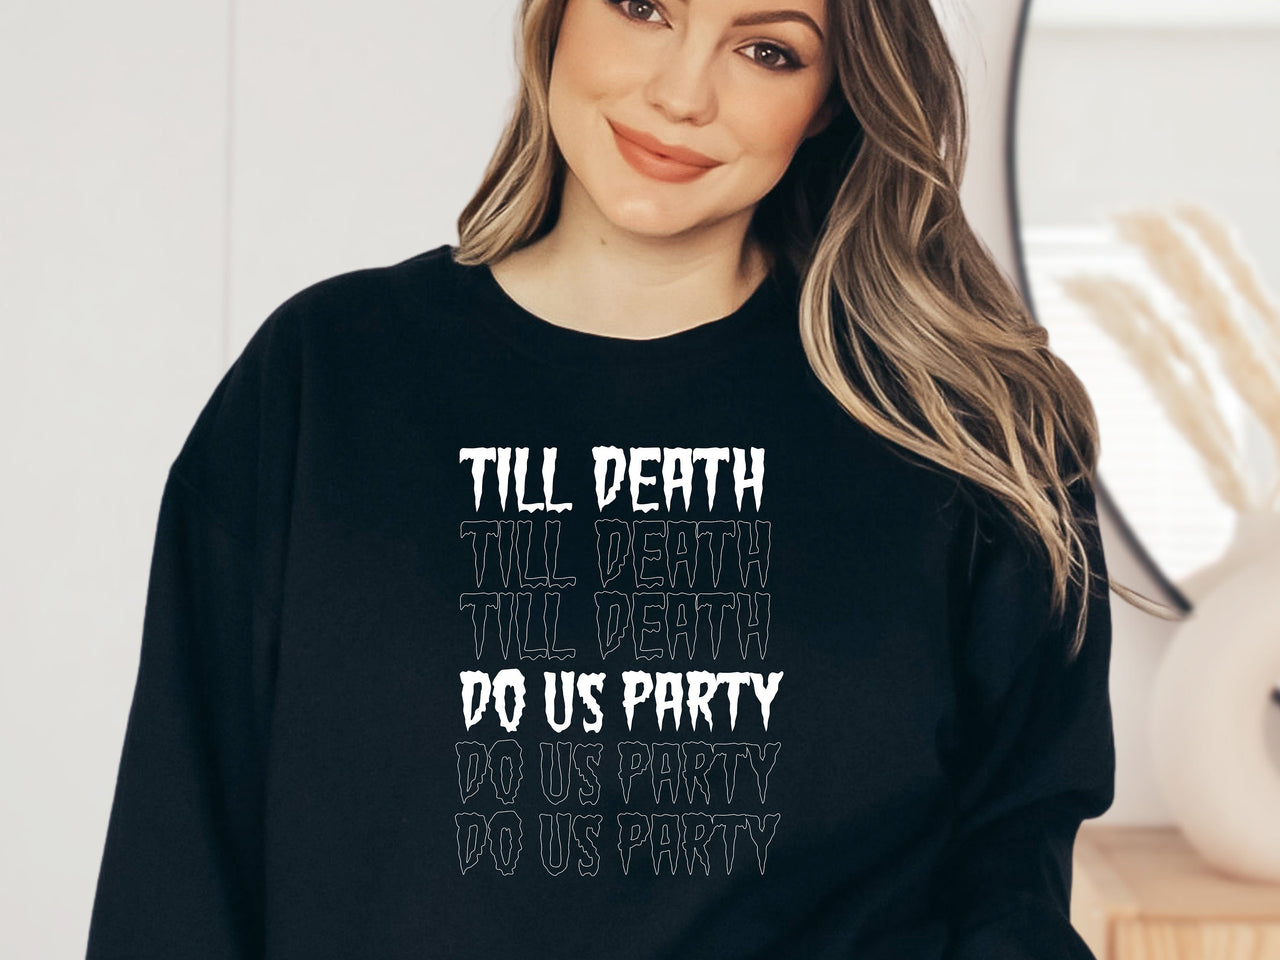 Bride or Die Till Death do us Party crewneck sweatshirt